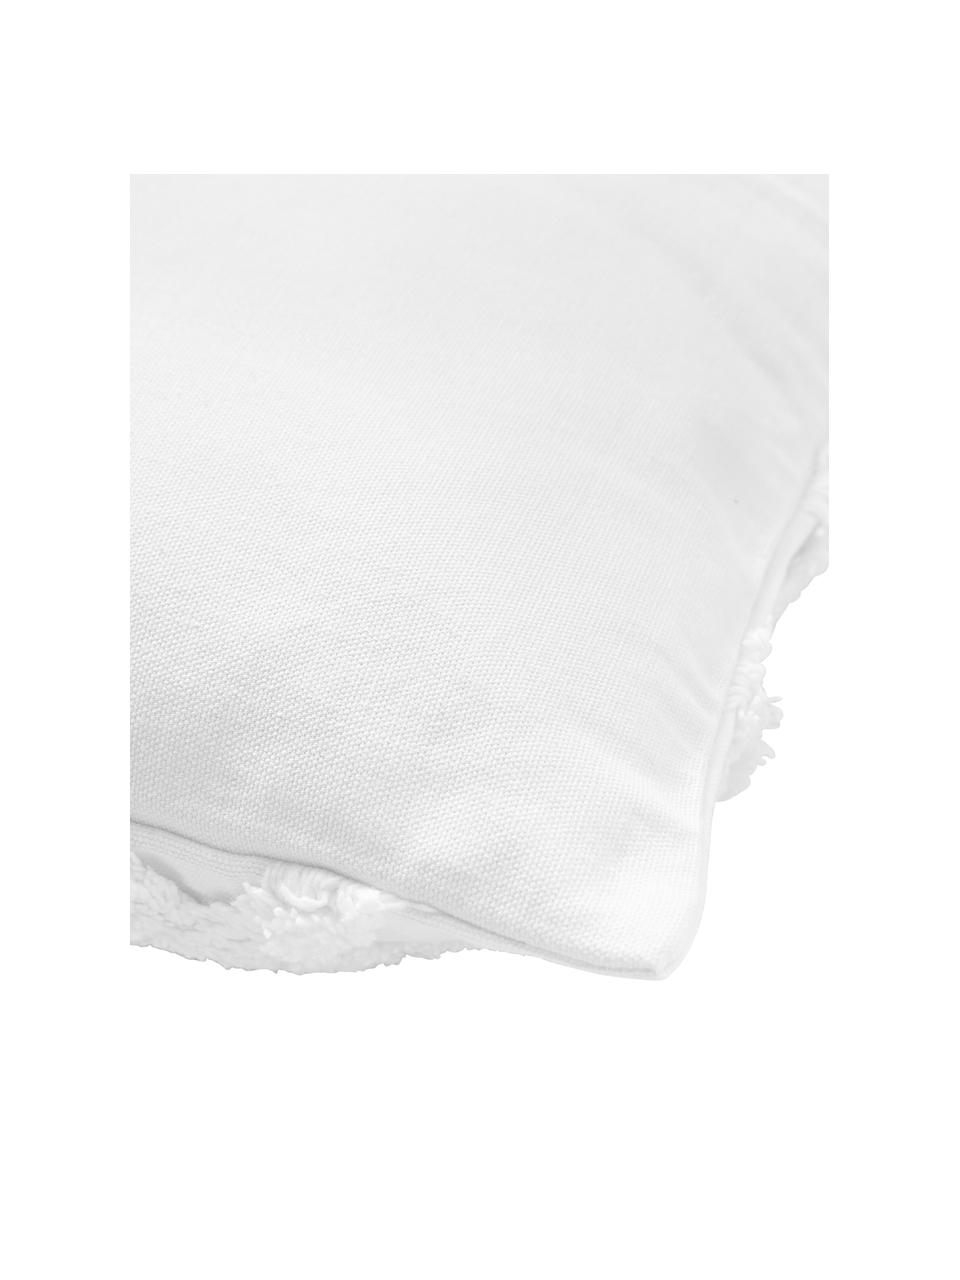 Kissenhülle Faith mit getuftetem Rautenmuster, 100% Baumwolle, Weiß, B 50 x L 50 cm